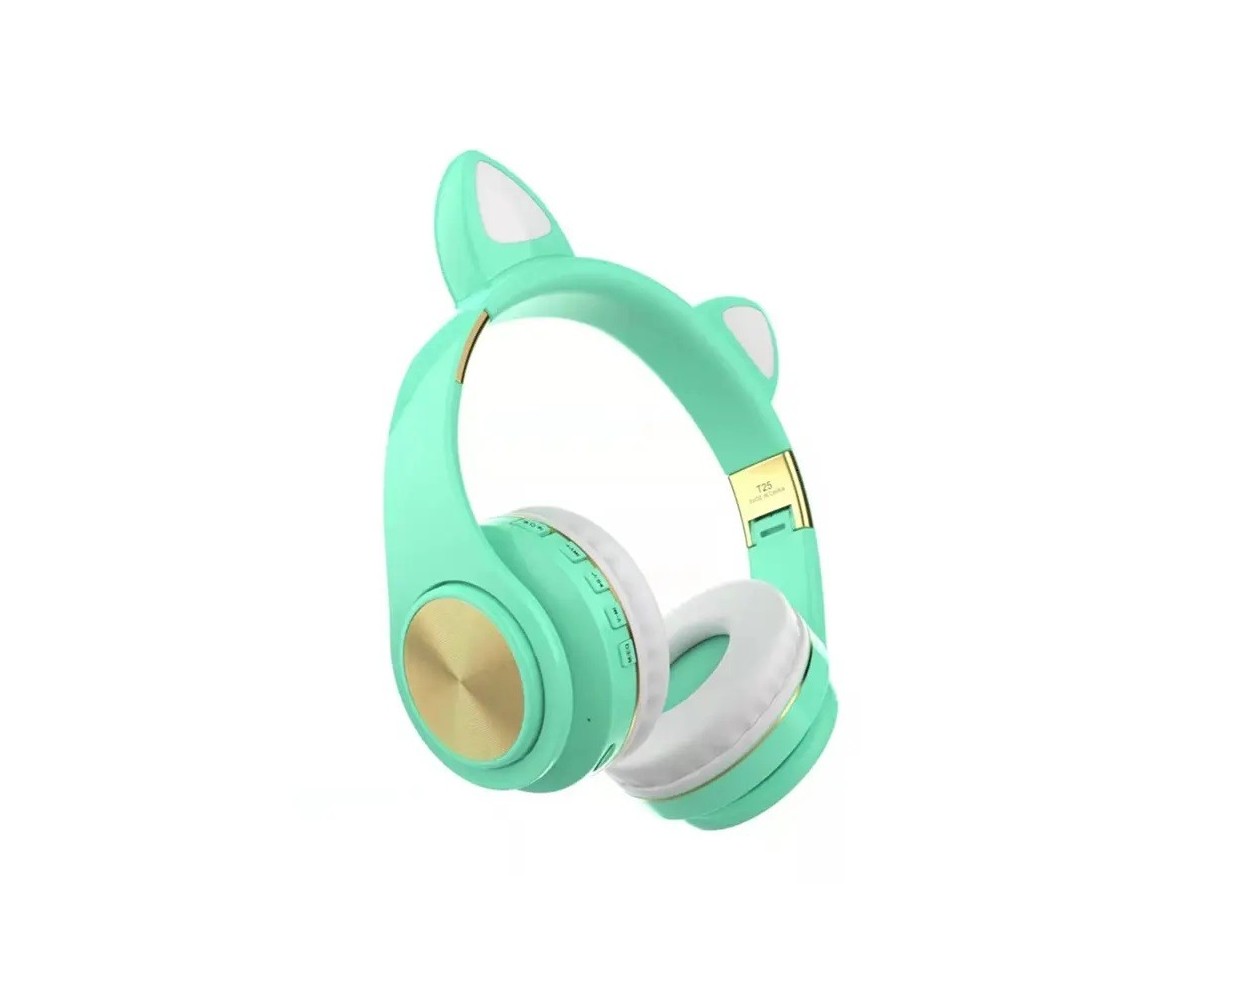 Ασύρματα ακουστικά - Cat Headphones - T25 - 540252 - Green